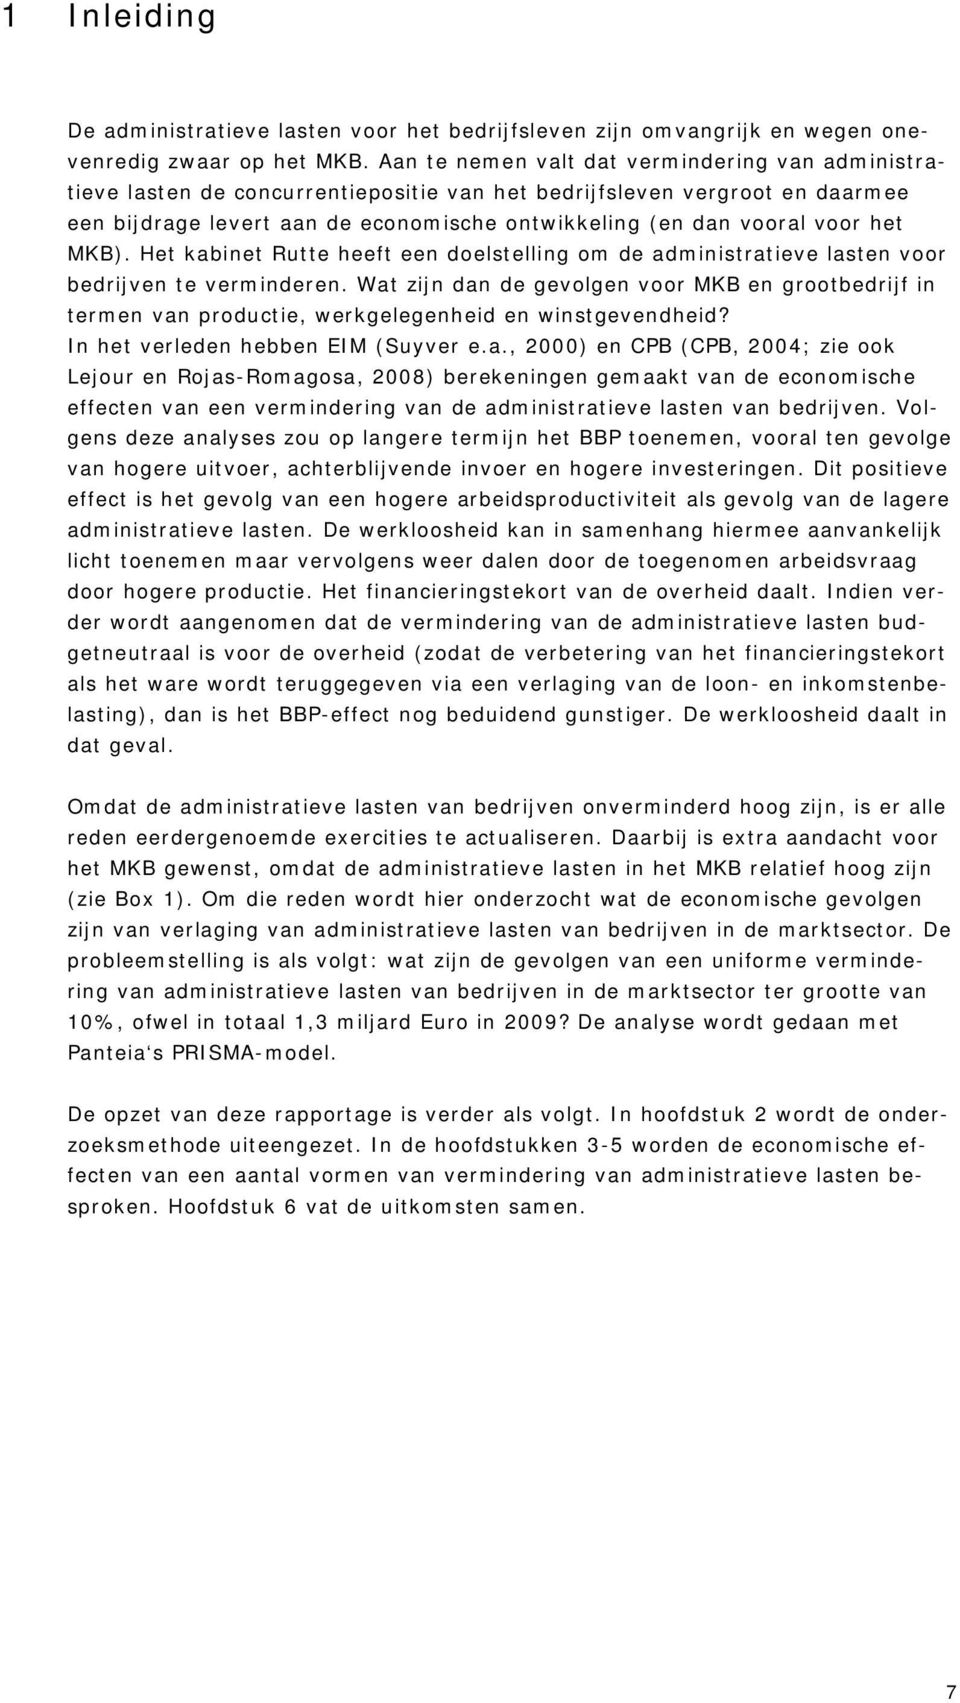 het MKB). Het kabinet Rutte heeft een doelstelling om de administratieve lasten voor bedrijven te verminderen.